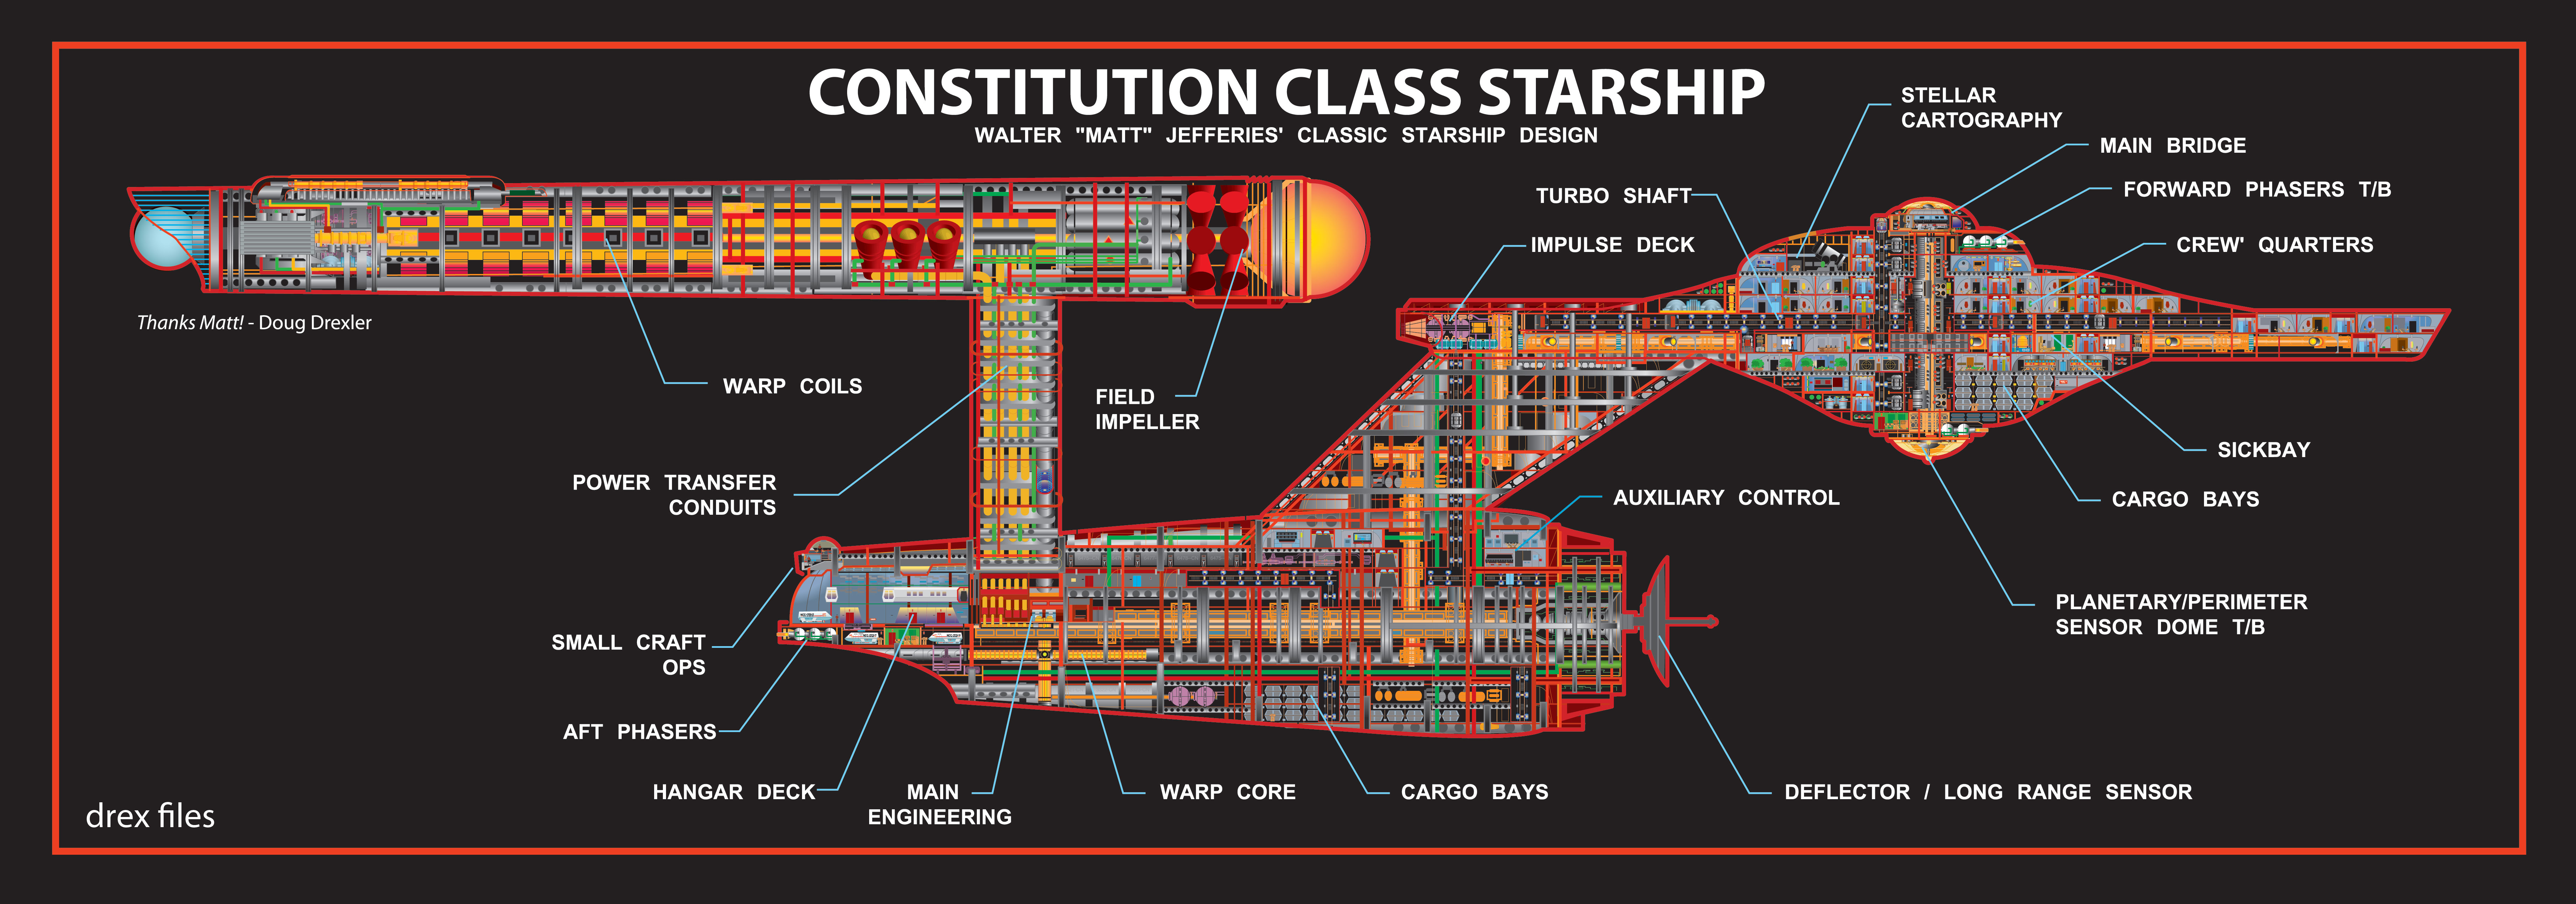 Star Trek, spaceships, schematic, vehicles, Star Trek schematics, constitution, class - desktop wallpaper